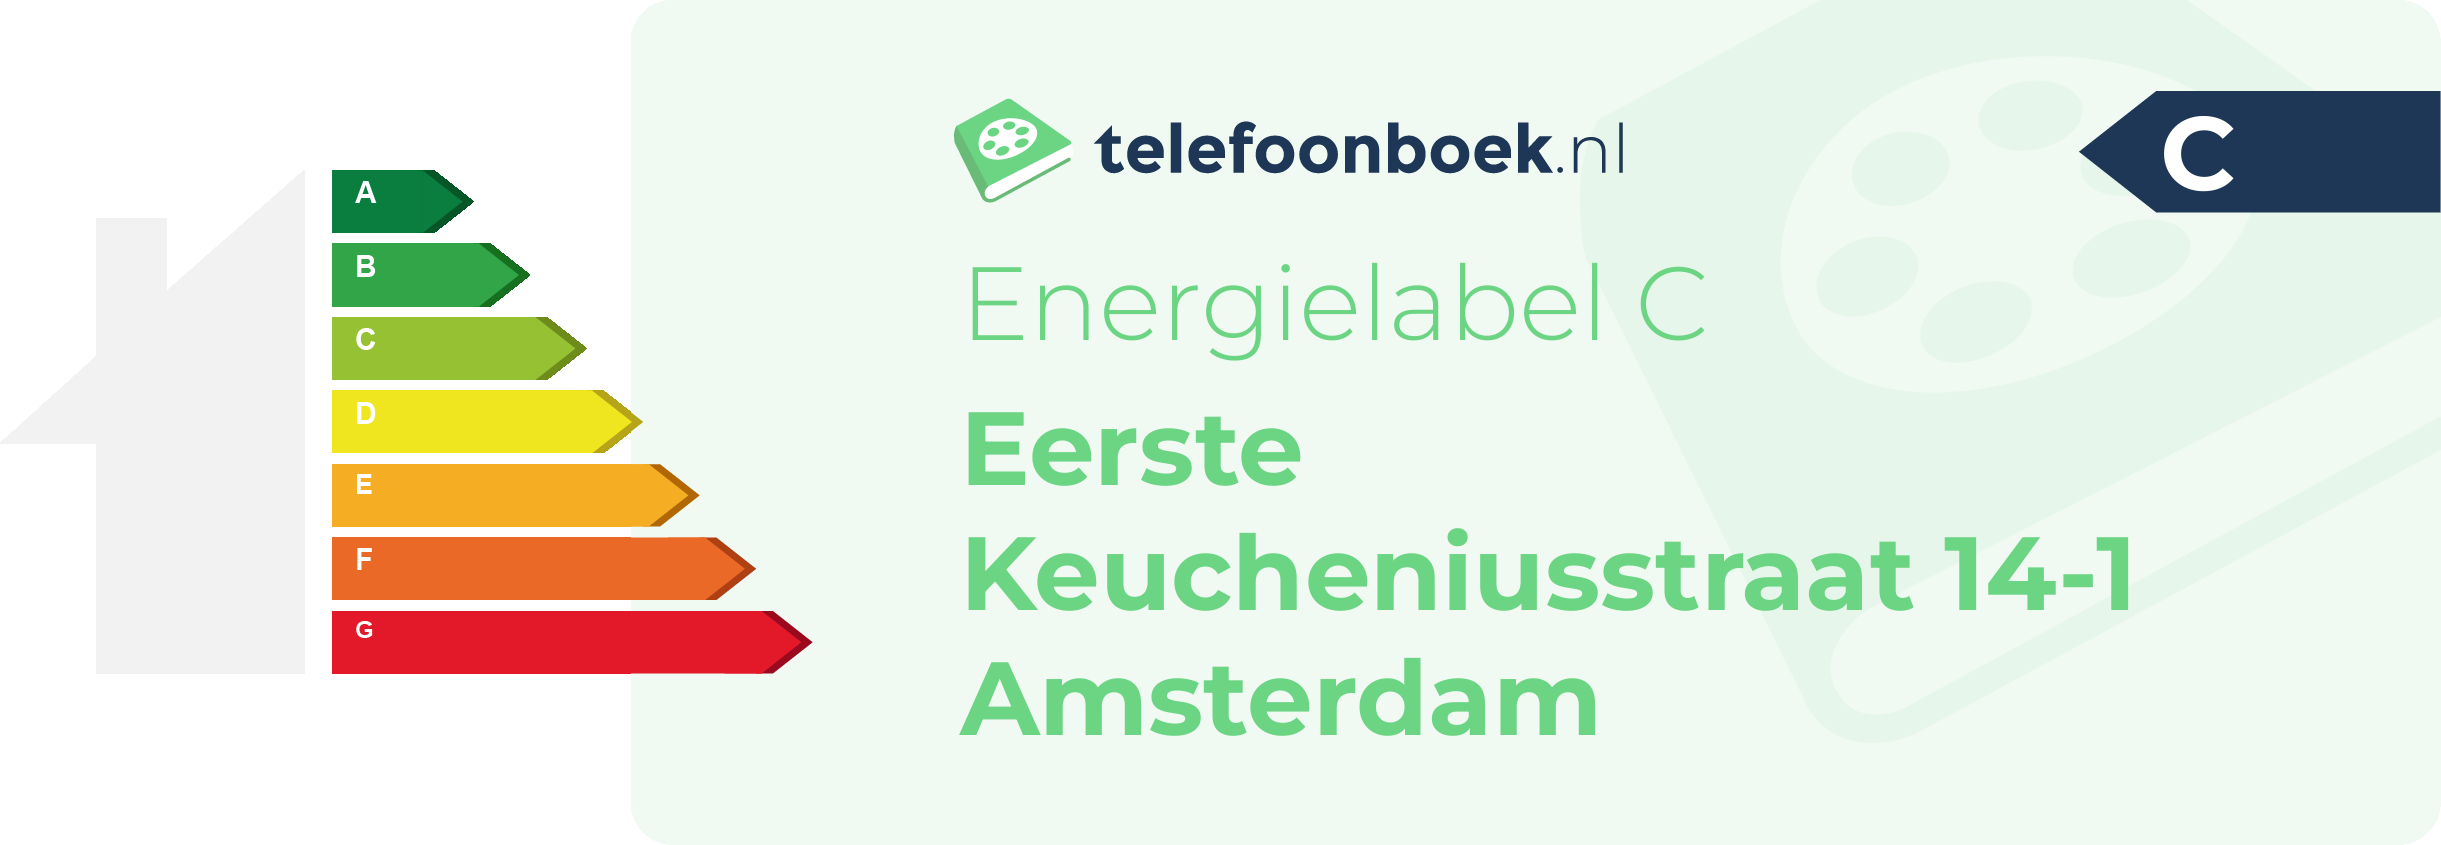 Energielabel Eerste Keucheniusstraat 14-1 Amsterdam